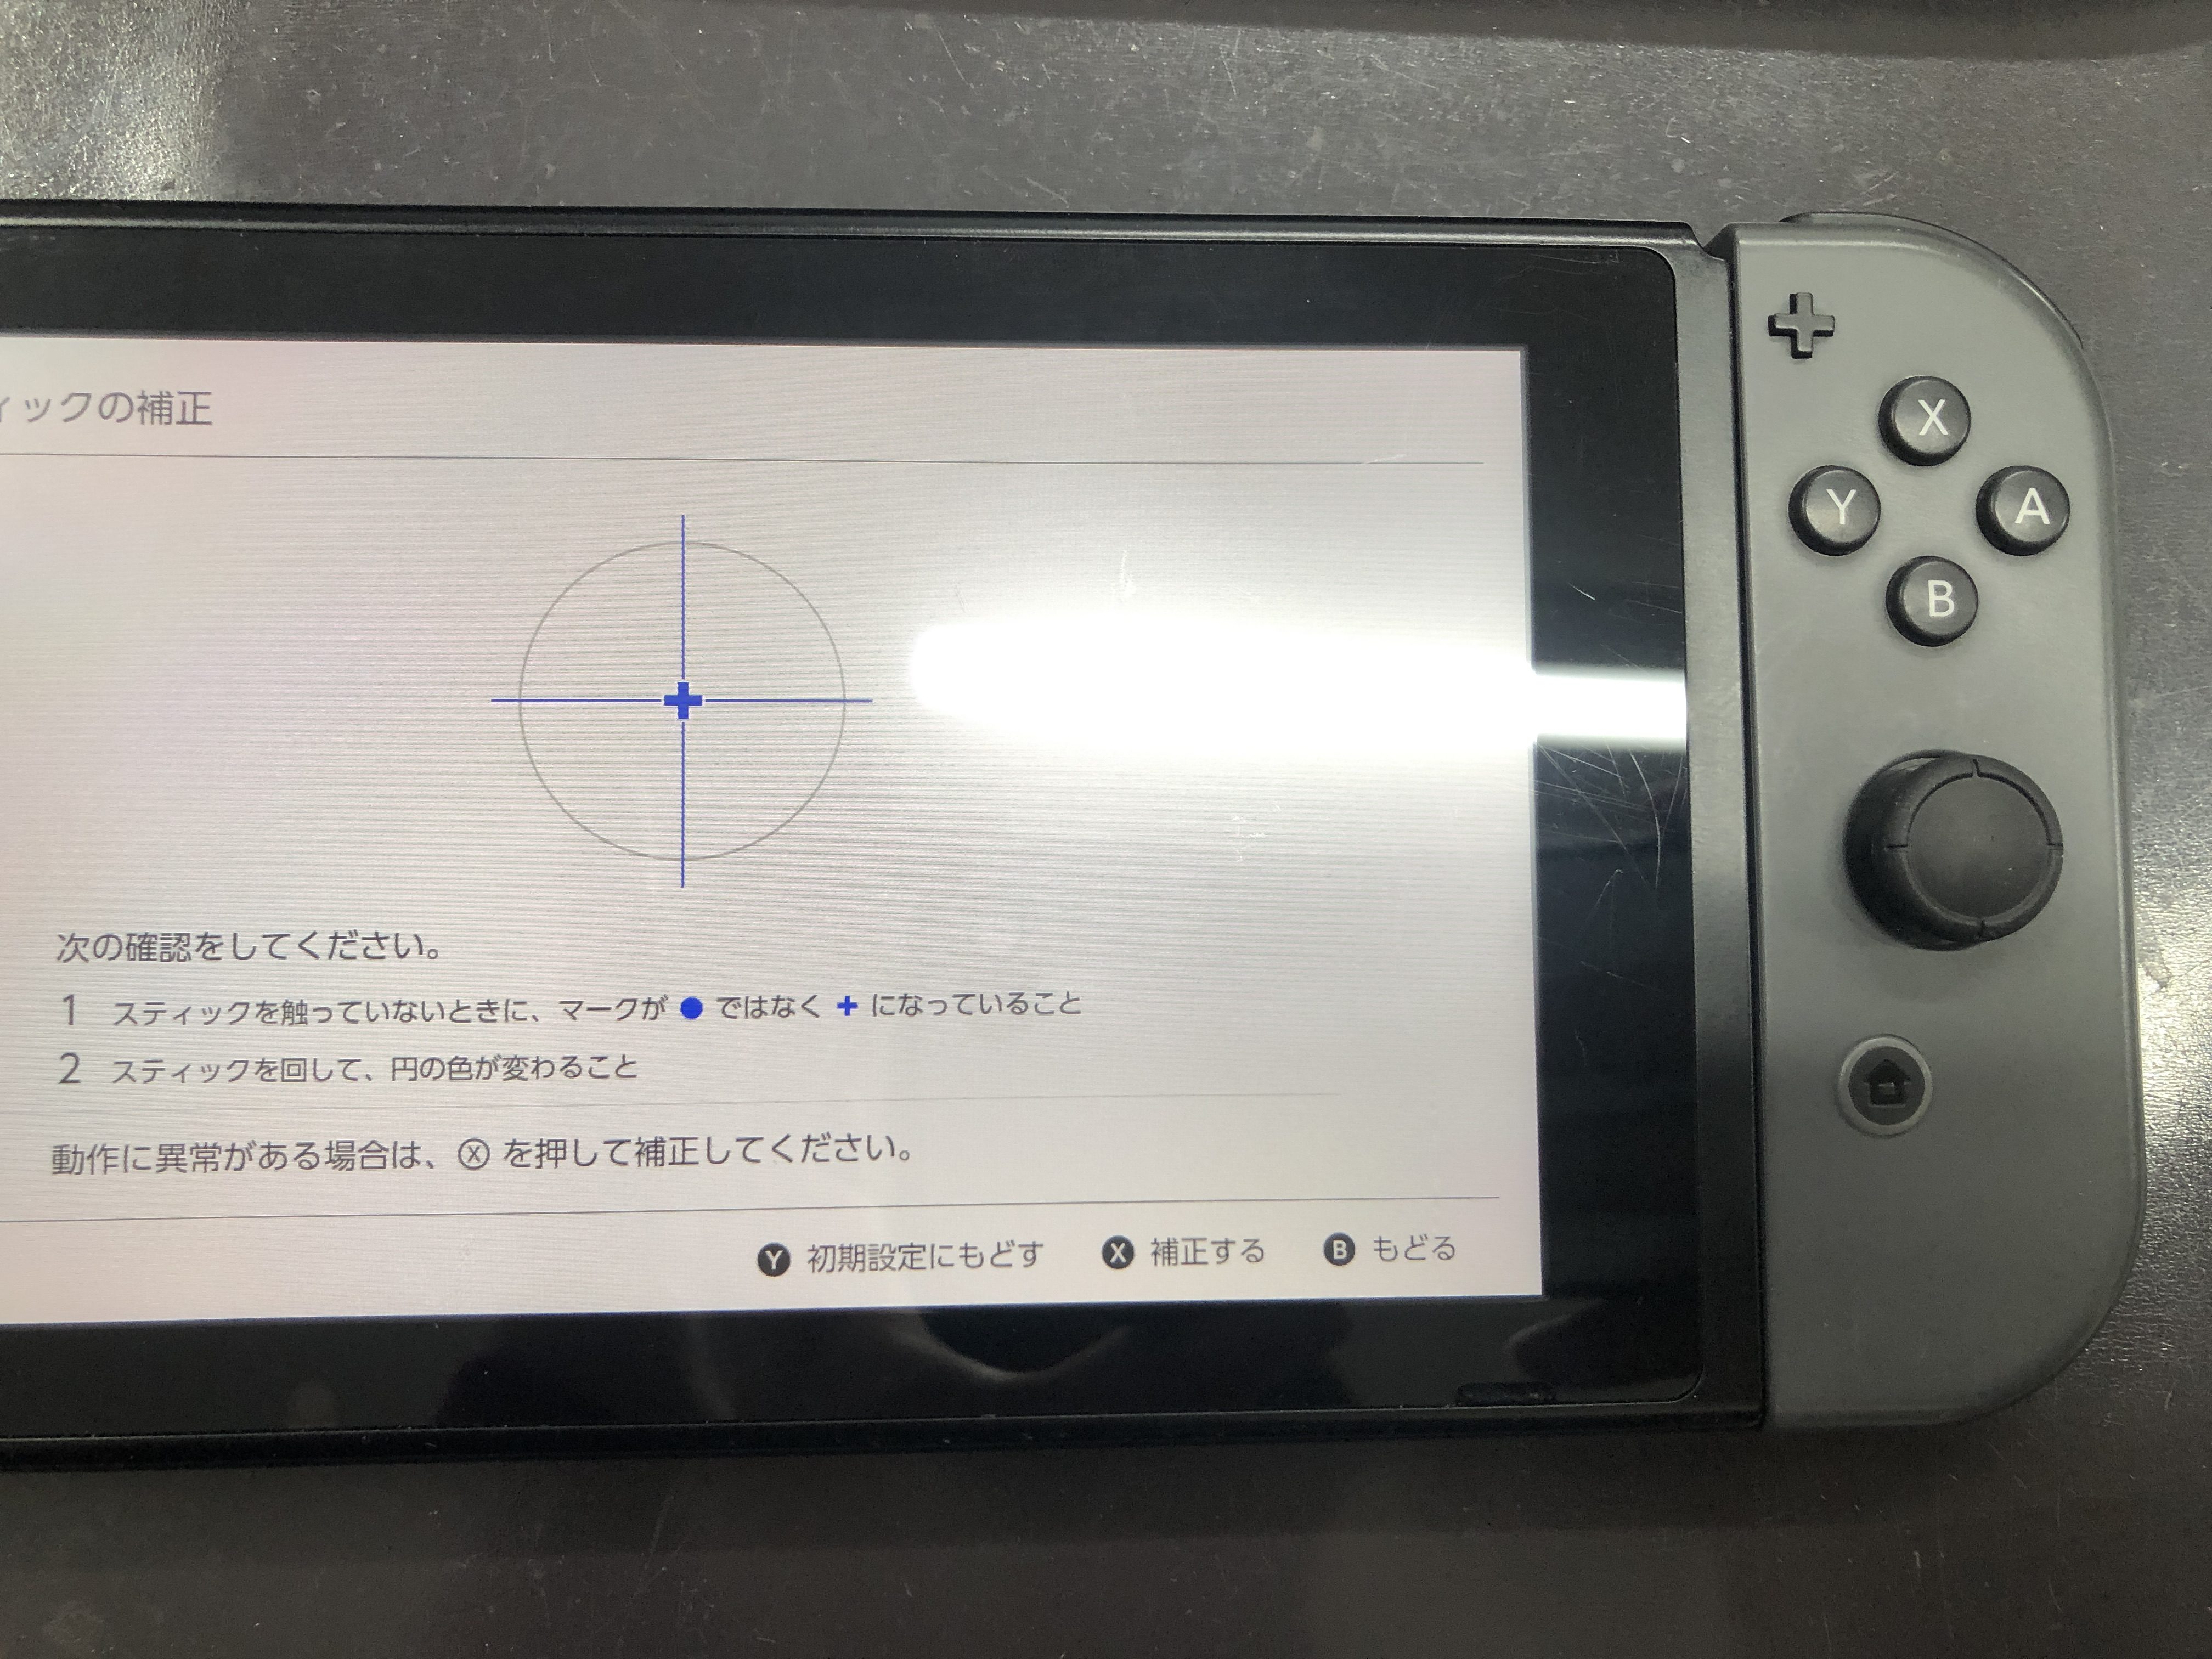 ジョイコンの誤動作は調整で直るかも Switch Nintendo3ds Psp 修理のゲームホスピタル Switch Nintendo3ds ニンテンドーds Psp 修理